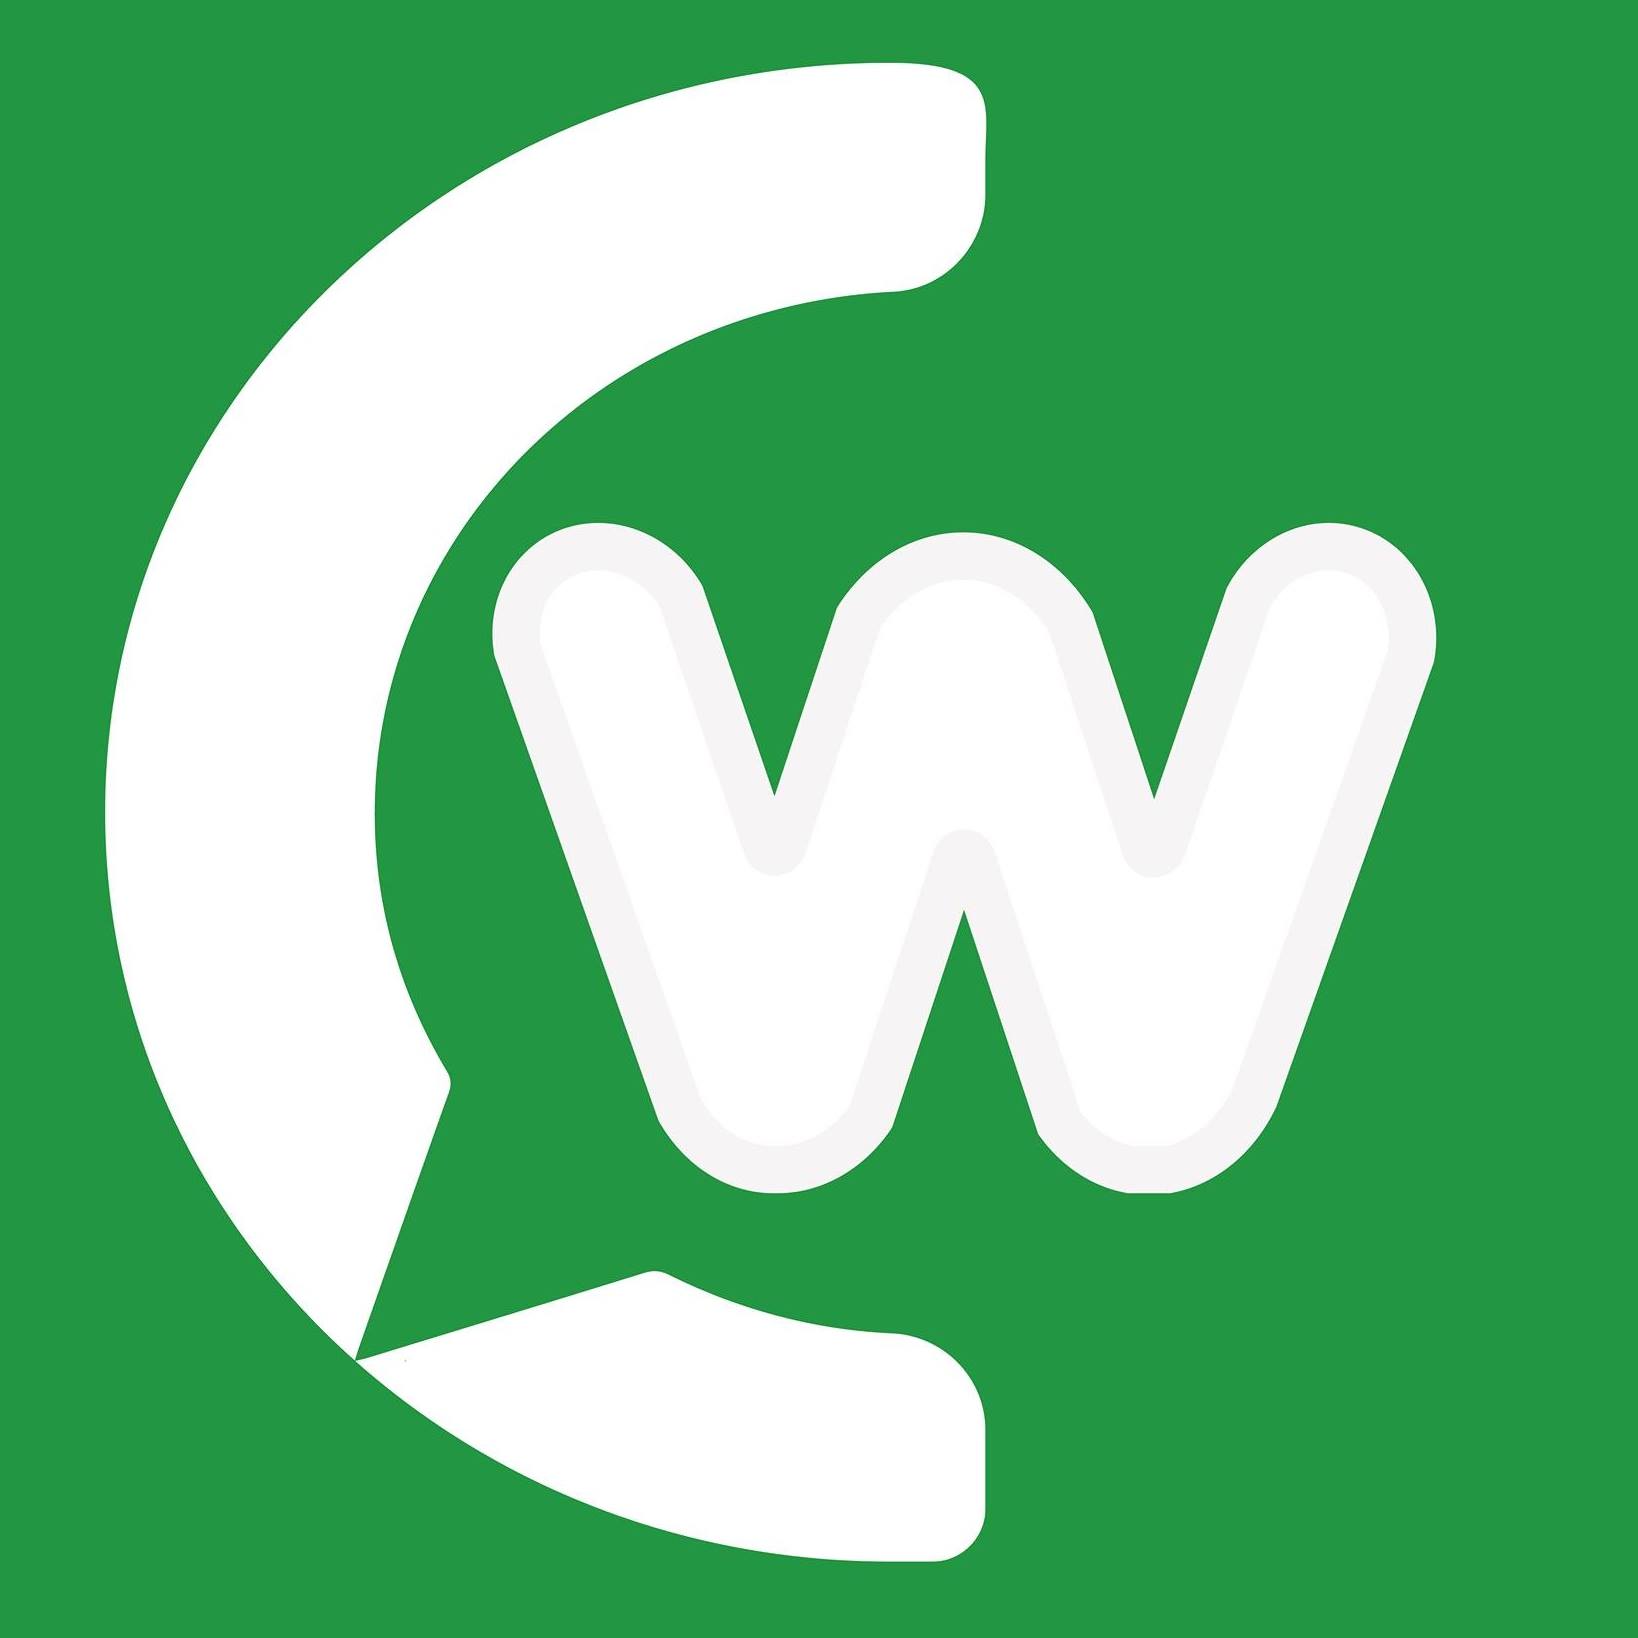 Whatsy - oitavo lugar no ranking de automações para WhatsApp